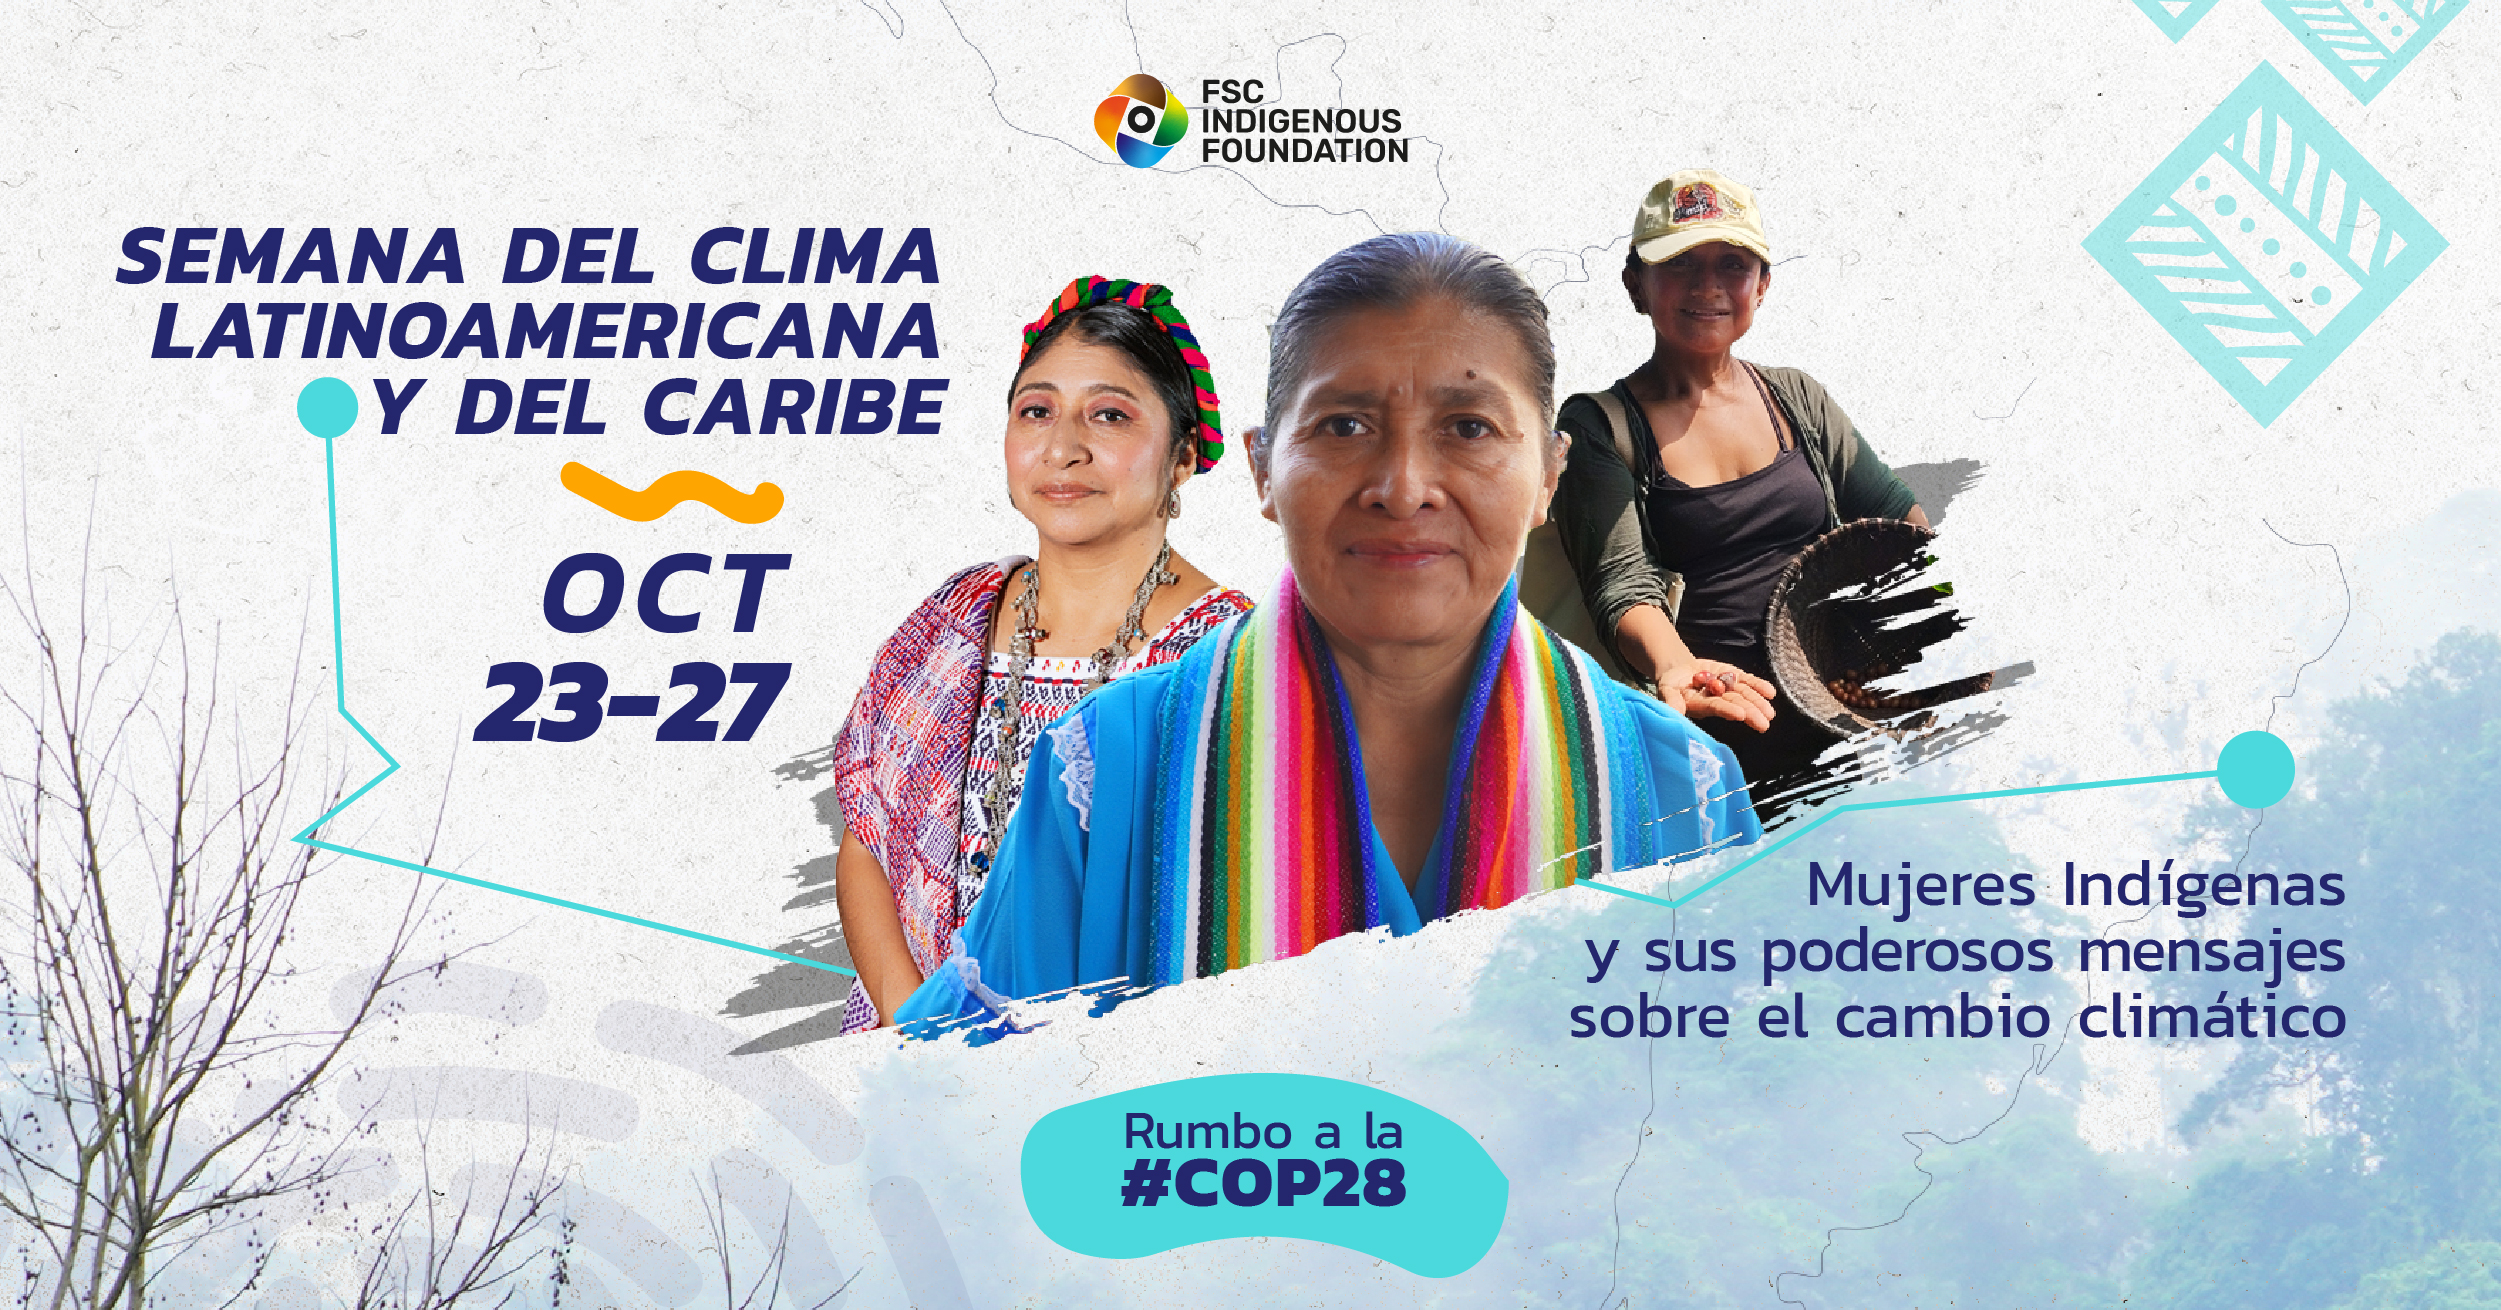 Mujeres Indígenas en la primera línea contra el cambio climático